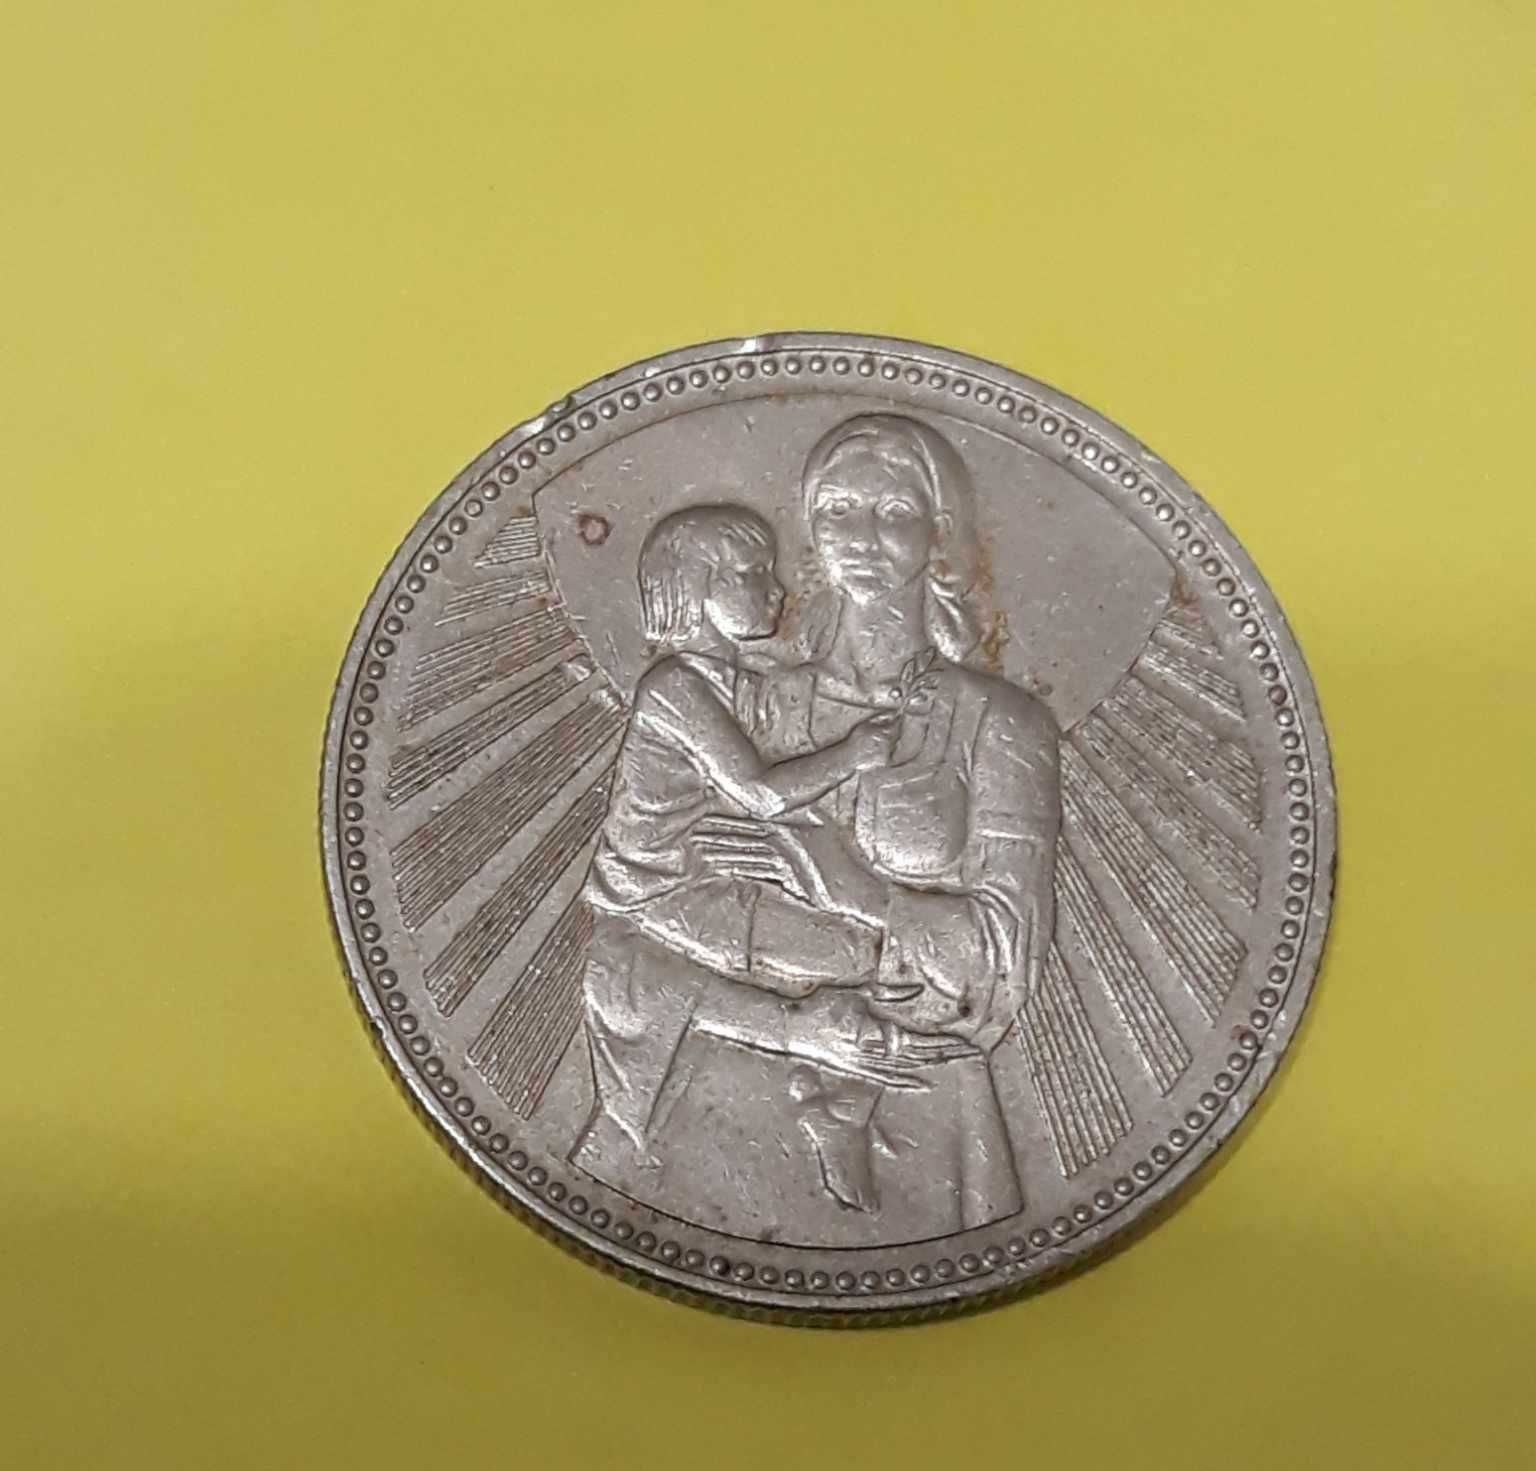 МОНЕТА  2 лева 1981 година -1300 години България - Майка с дете